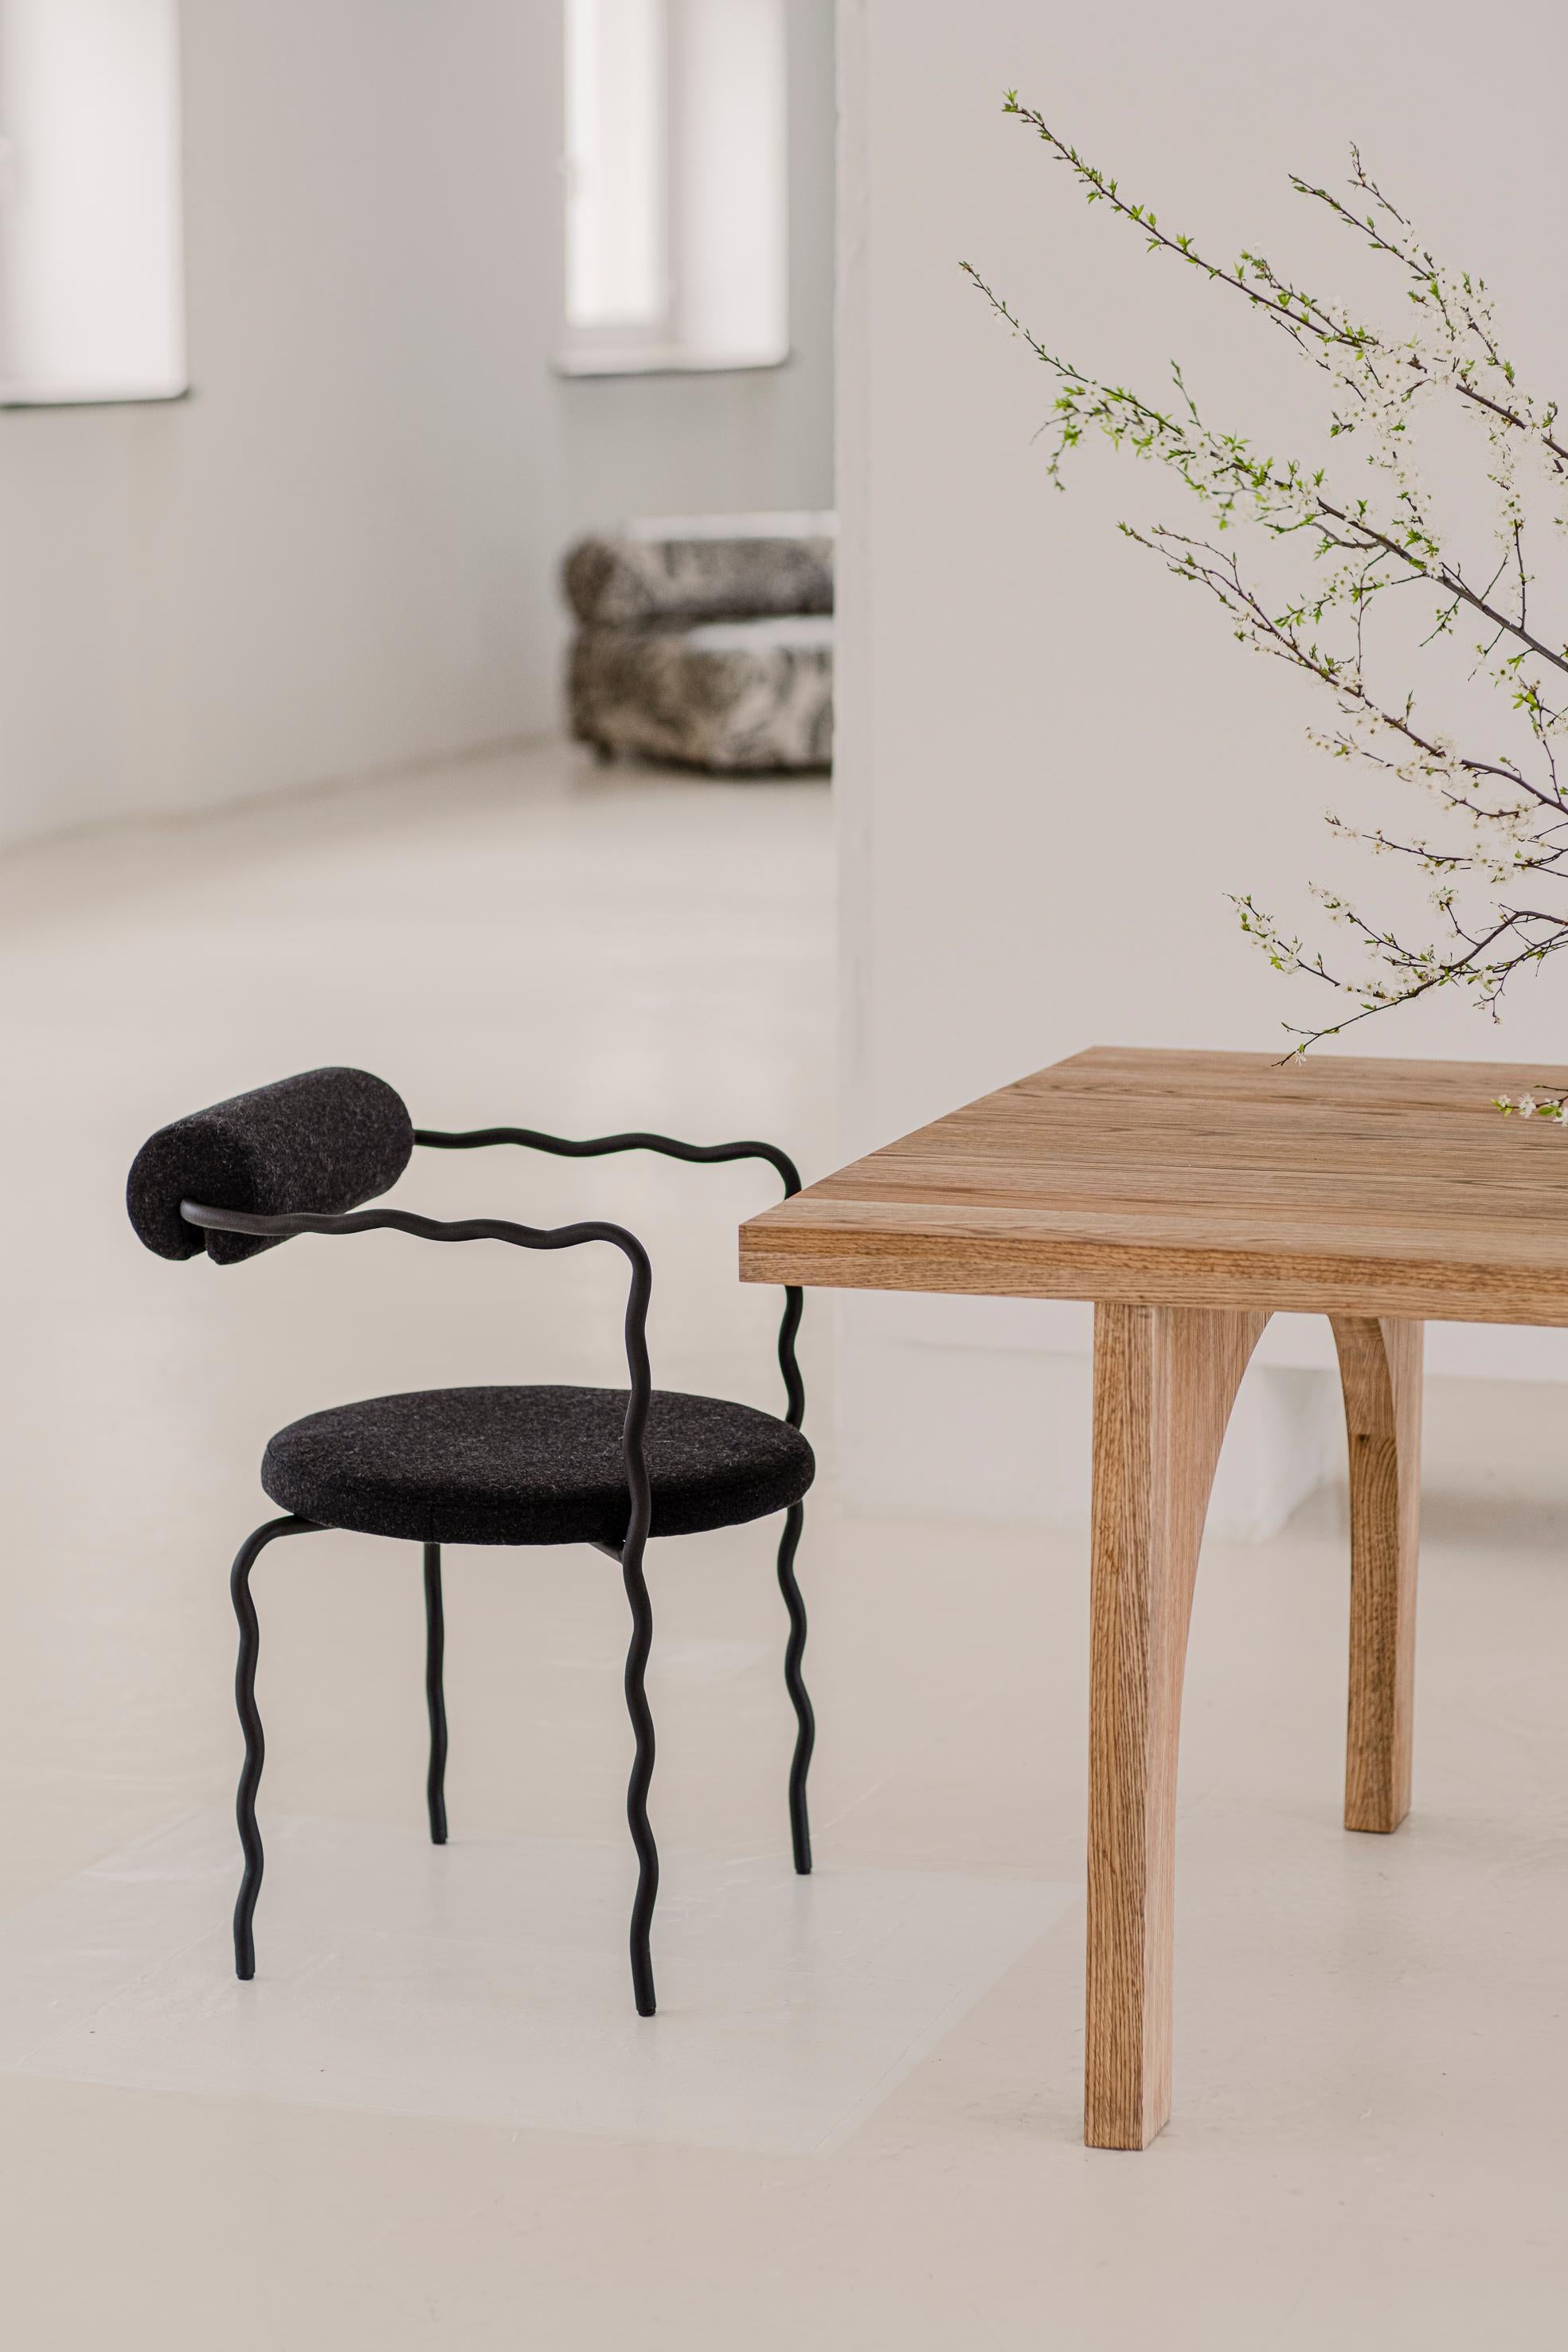 Stahlstuhl mit hochwertigem Stoff von Dedar Milano. Entworfen von Monika Szyca-Thomas für The Good Living&Co im Jahr 2022. Die Stühle werden zu 100 % von Hand in einer kleinen, 1927 gegründeten Werkstatt hergestellt.

Die Polsterung wird nach dem